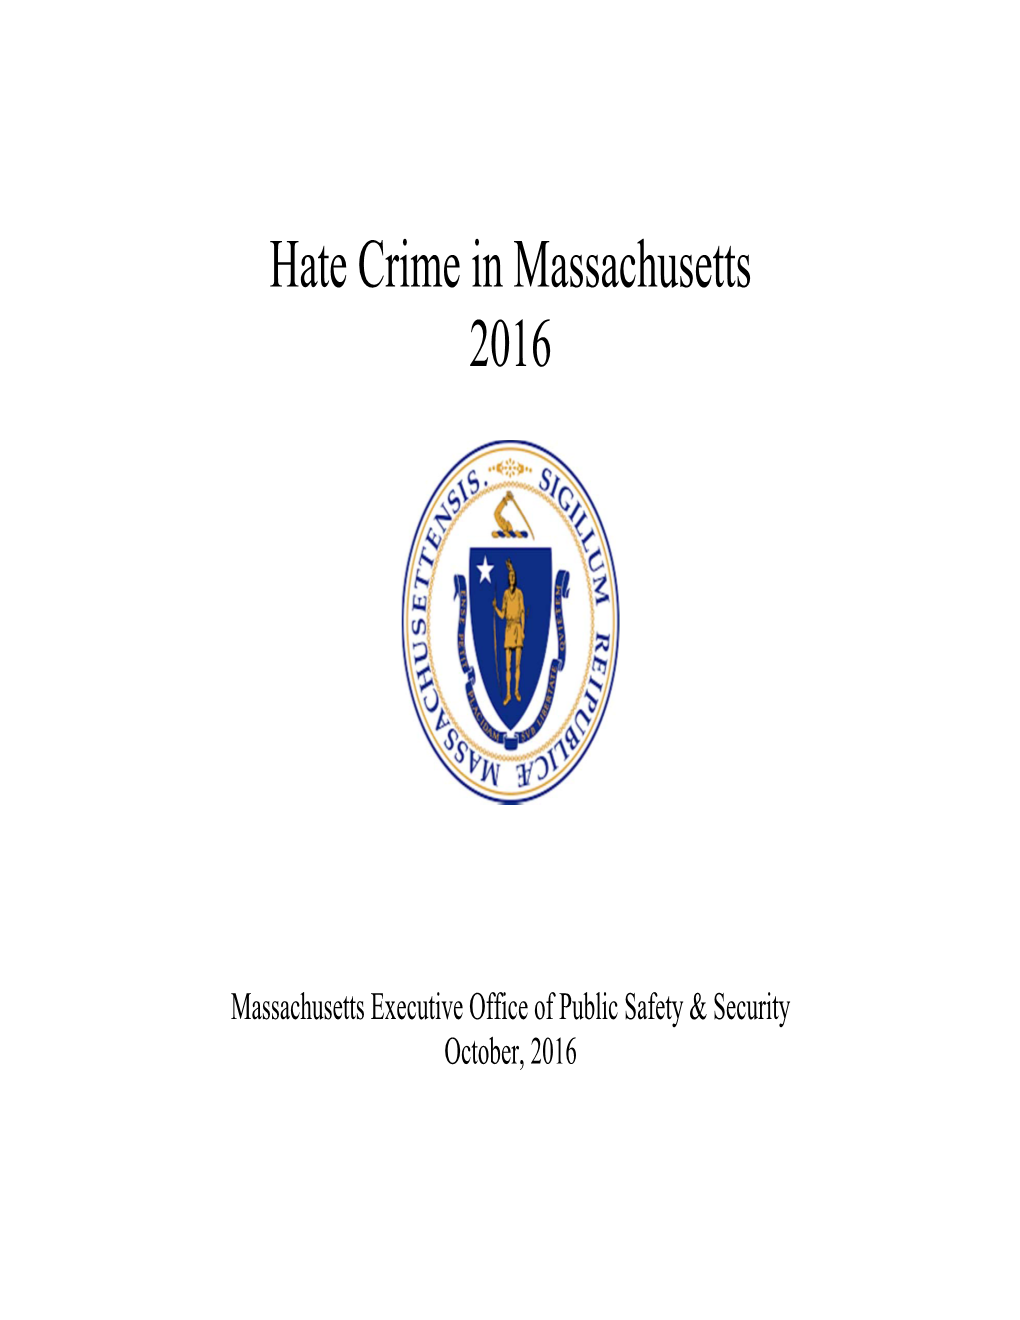 Hate Crime in Massachusetts 2016